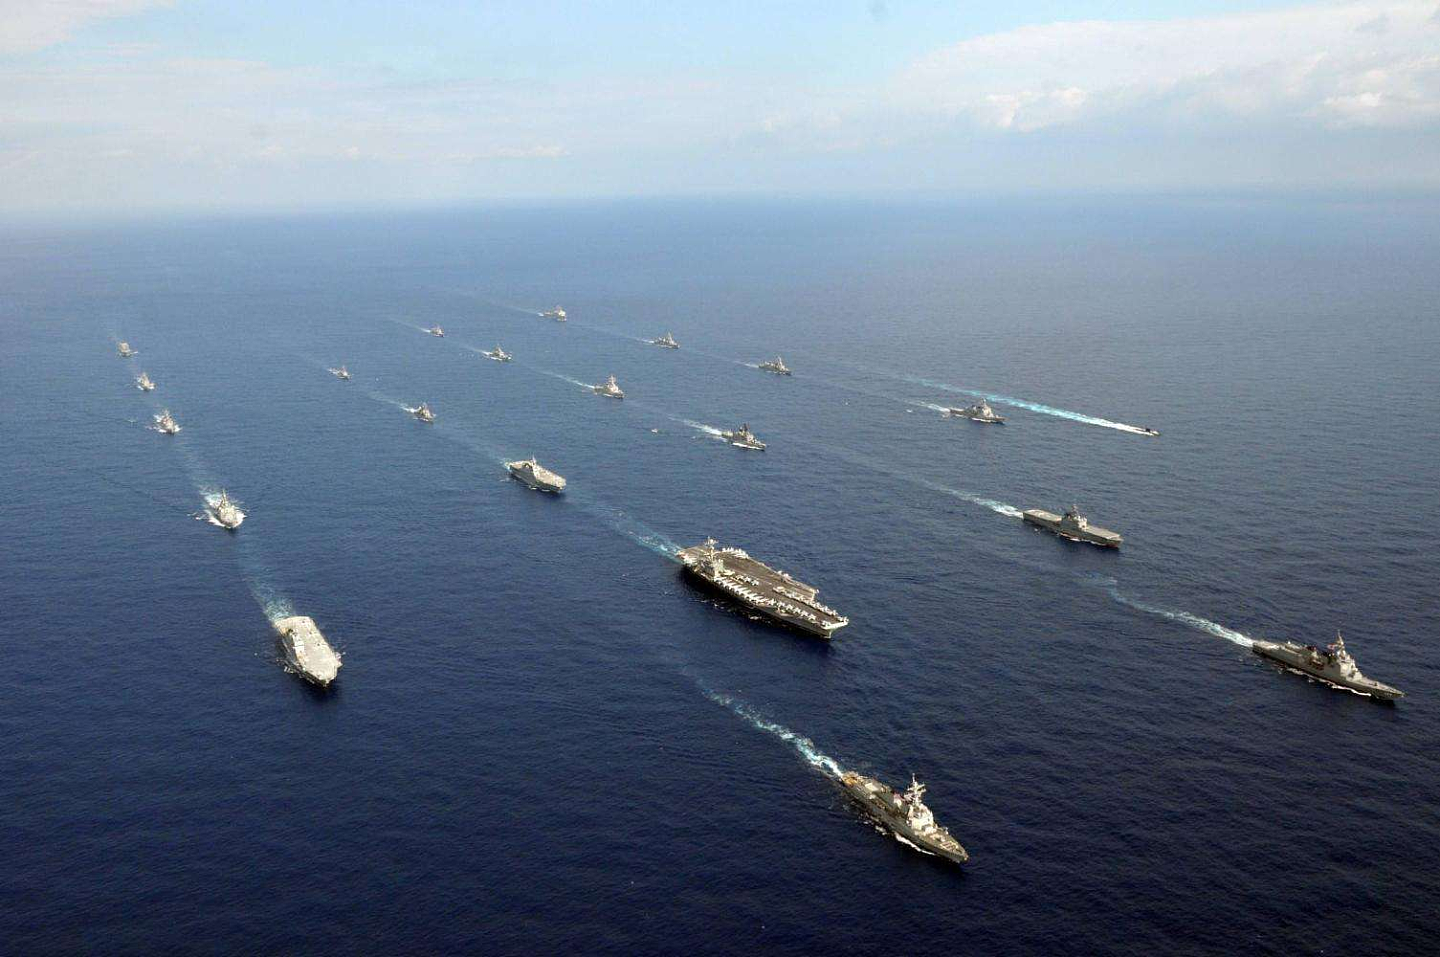 中国用了20年发展出超大规模舰队 民用造船的中心转到东北亚